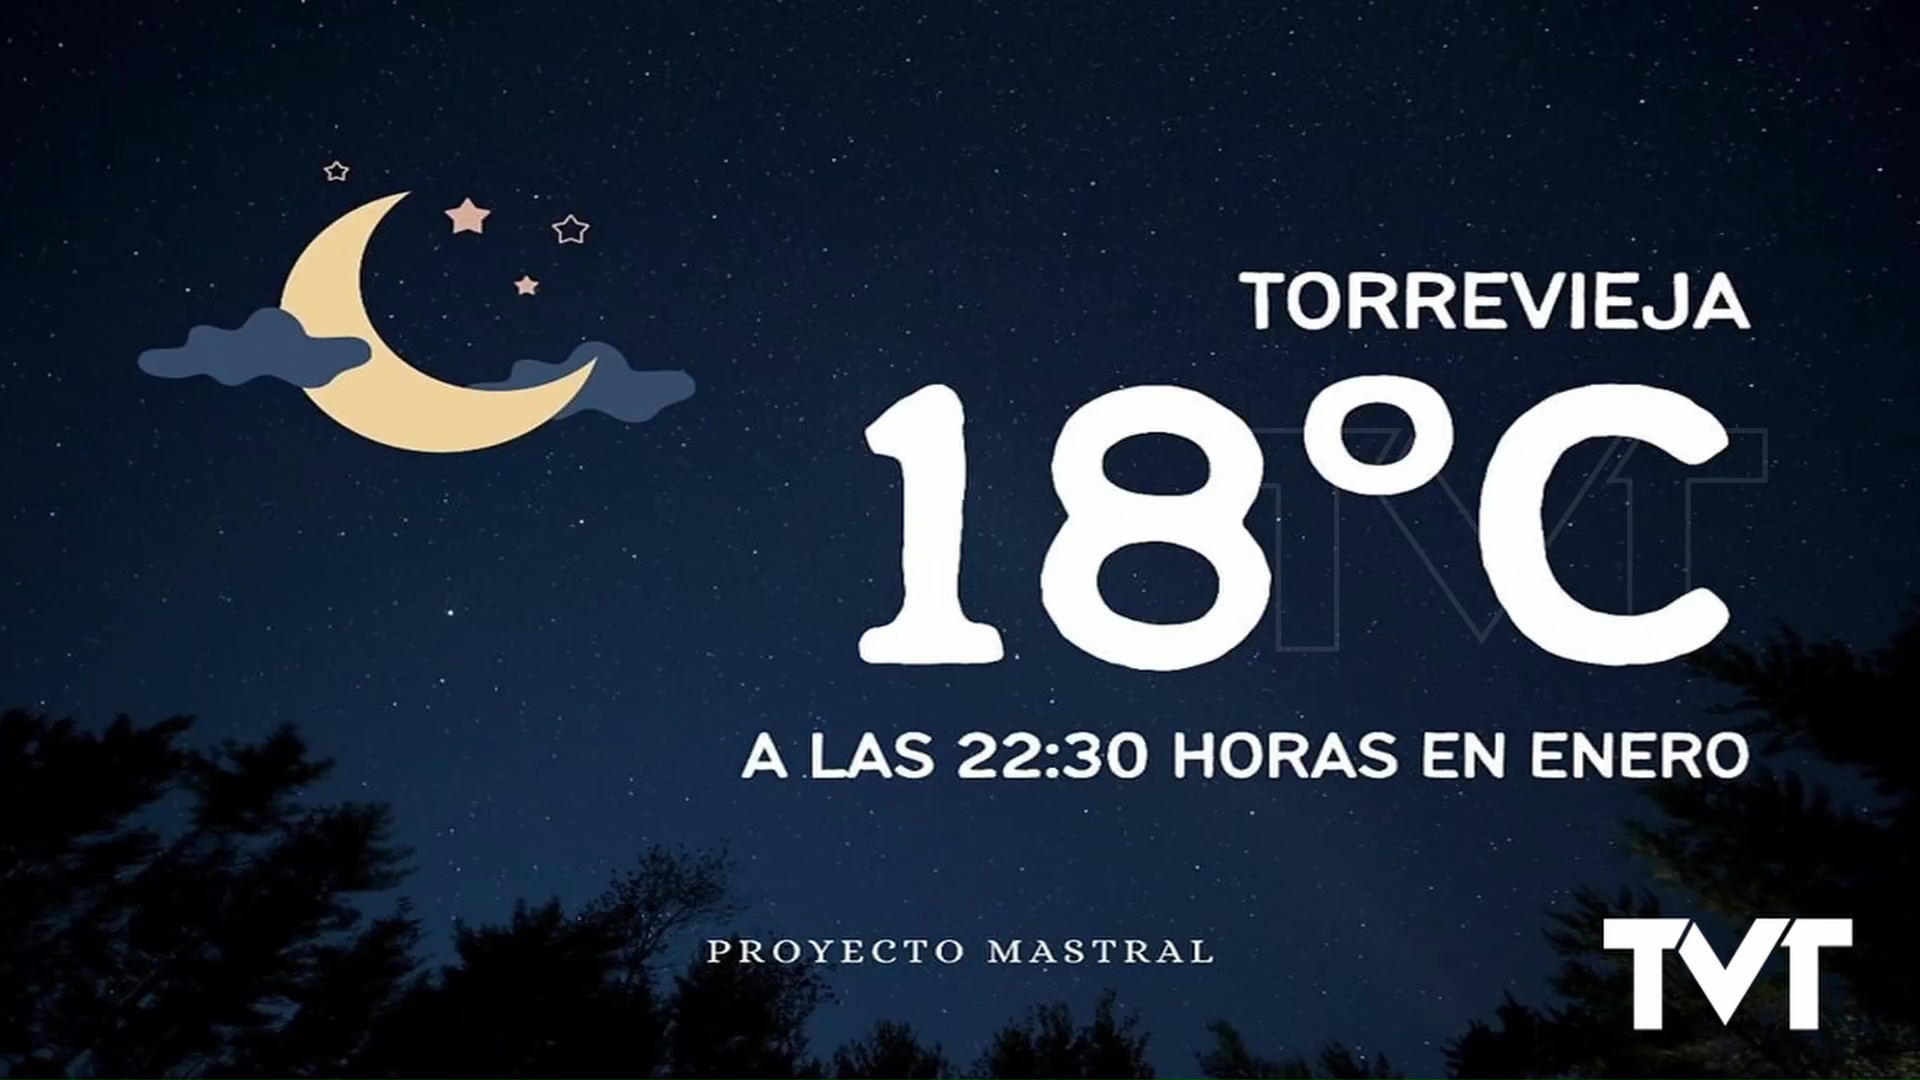 Imagen de Noche con 18 grados de temperatura en Torrevieja, poco acorde a la época invernal 